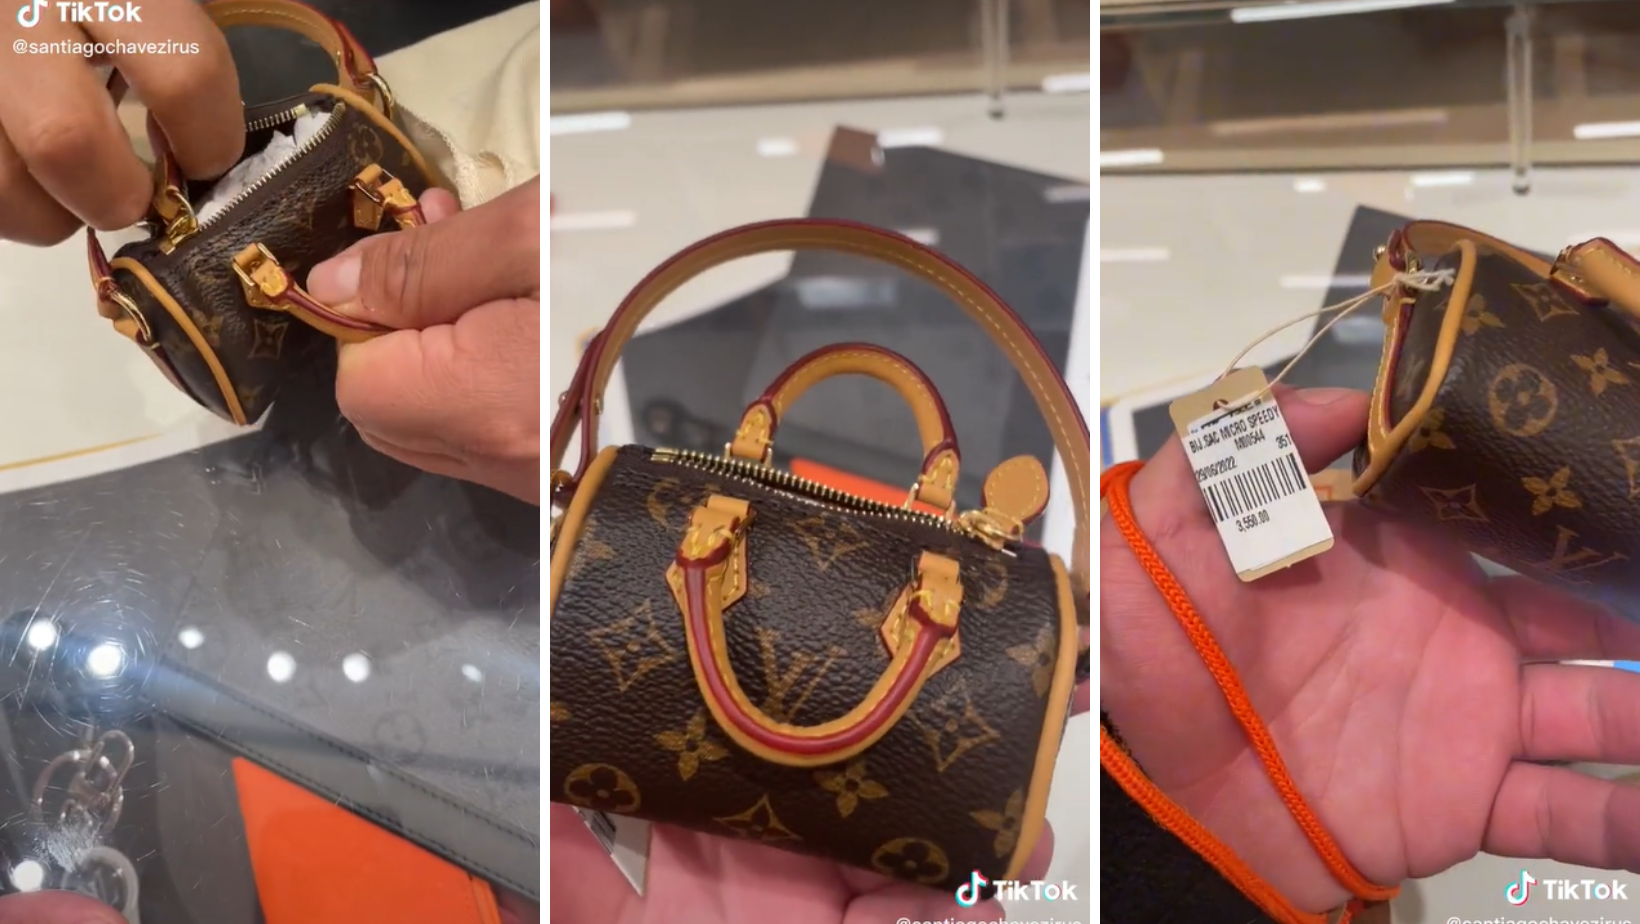 Video viral, Regala bolsa de Louis Vuitton a su empleada, pero descube que  es una imitación, TikTok, México, nnda nnrt, VIRALES